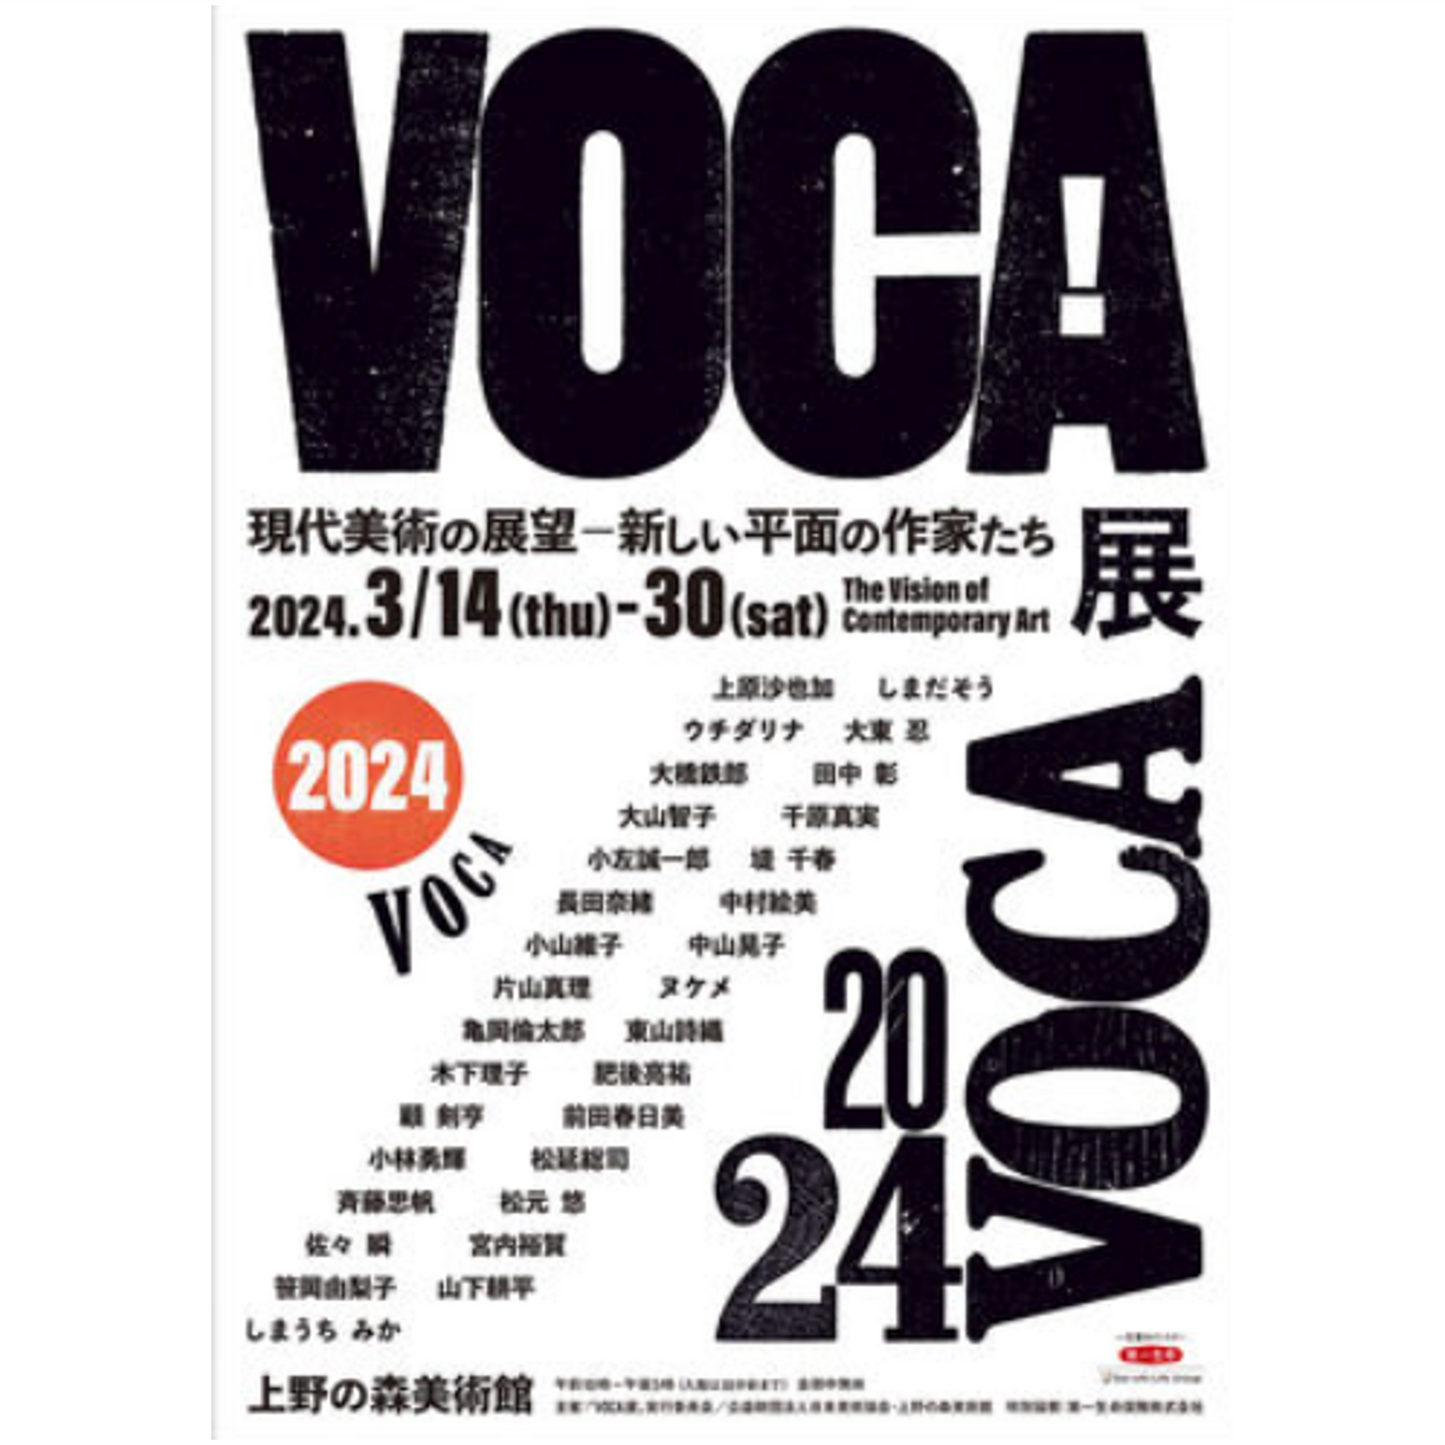 08. 上野の森美術館「 VOCA展」 ～現代美術の展望―新しい平面の作家たち～